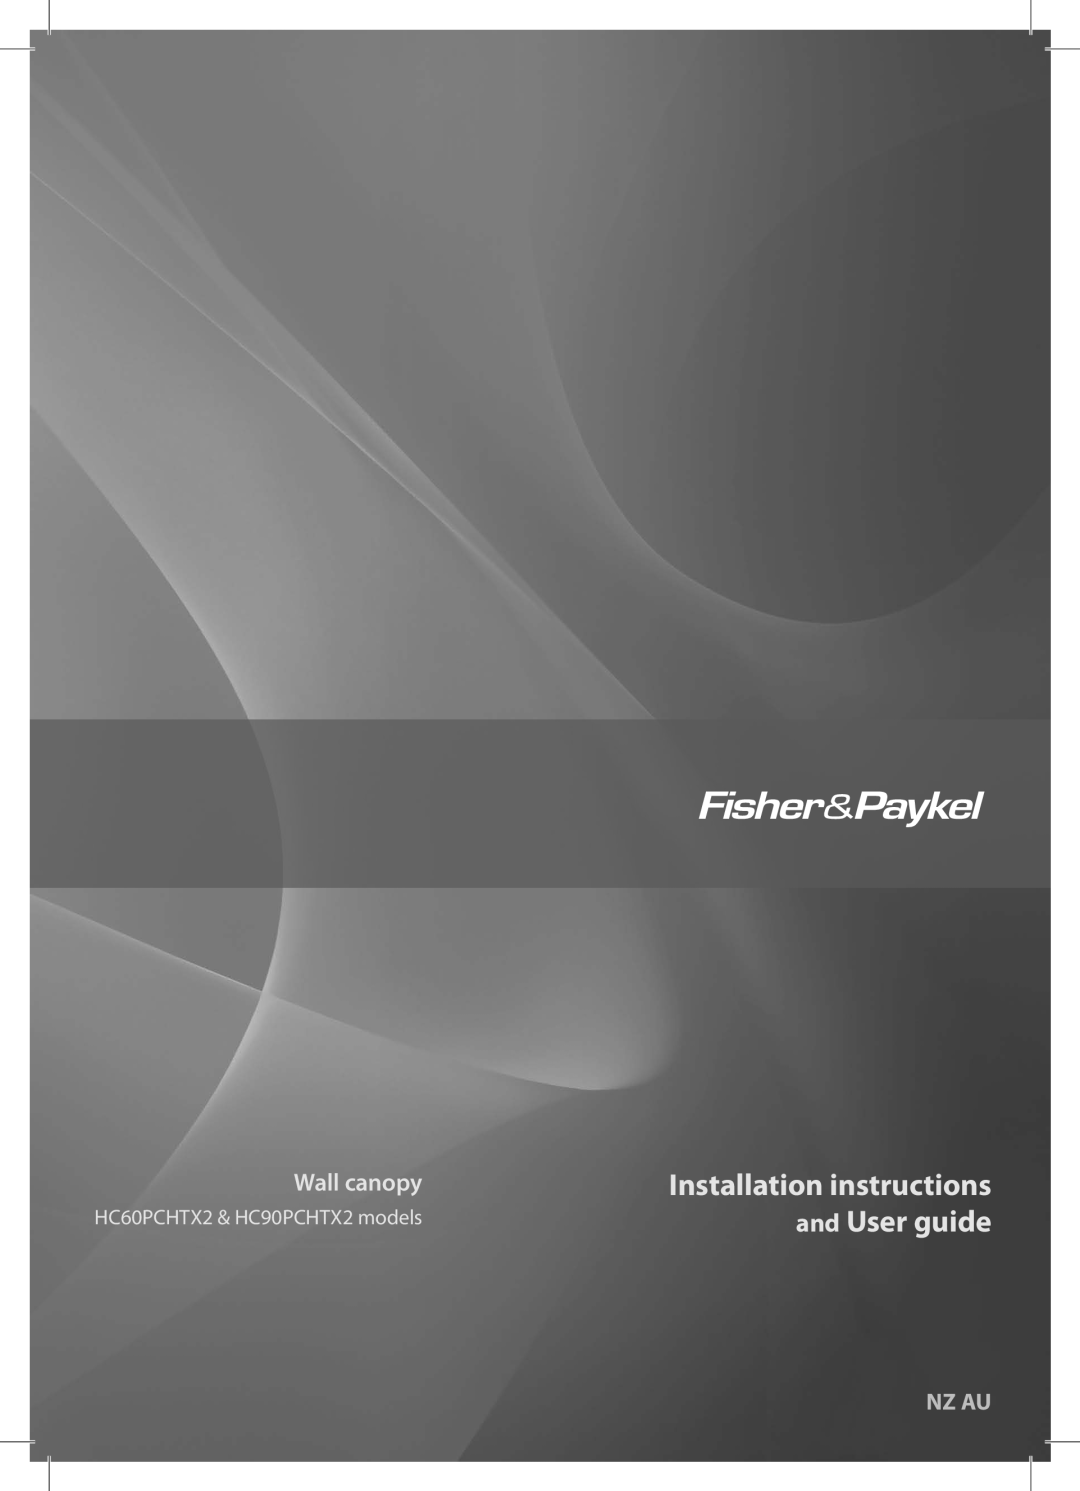 Fisher & Paykel HC90PCHTX2 installation instructions Installation instructions, and User guide, Wall canopy, Nz Au 